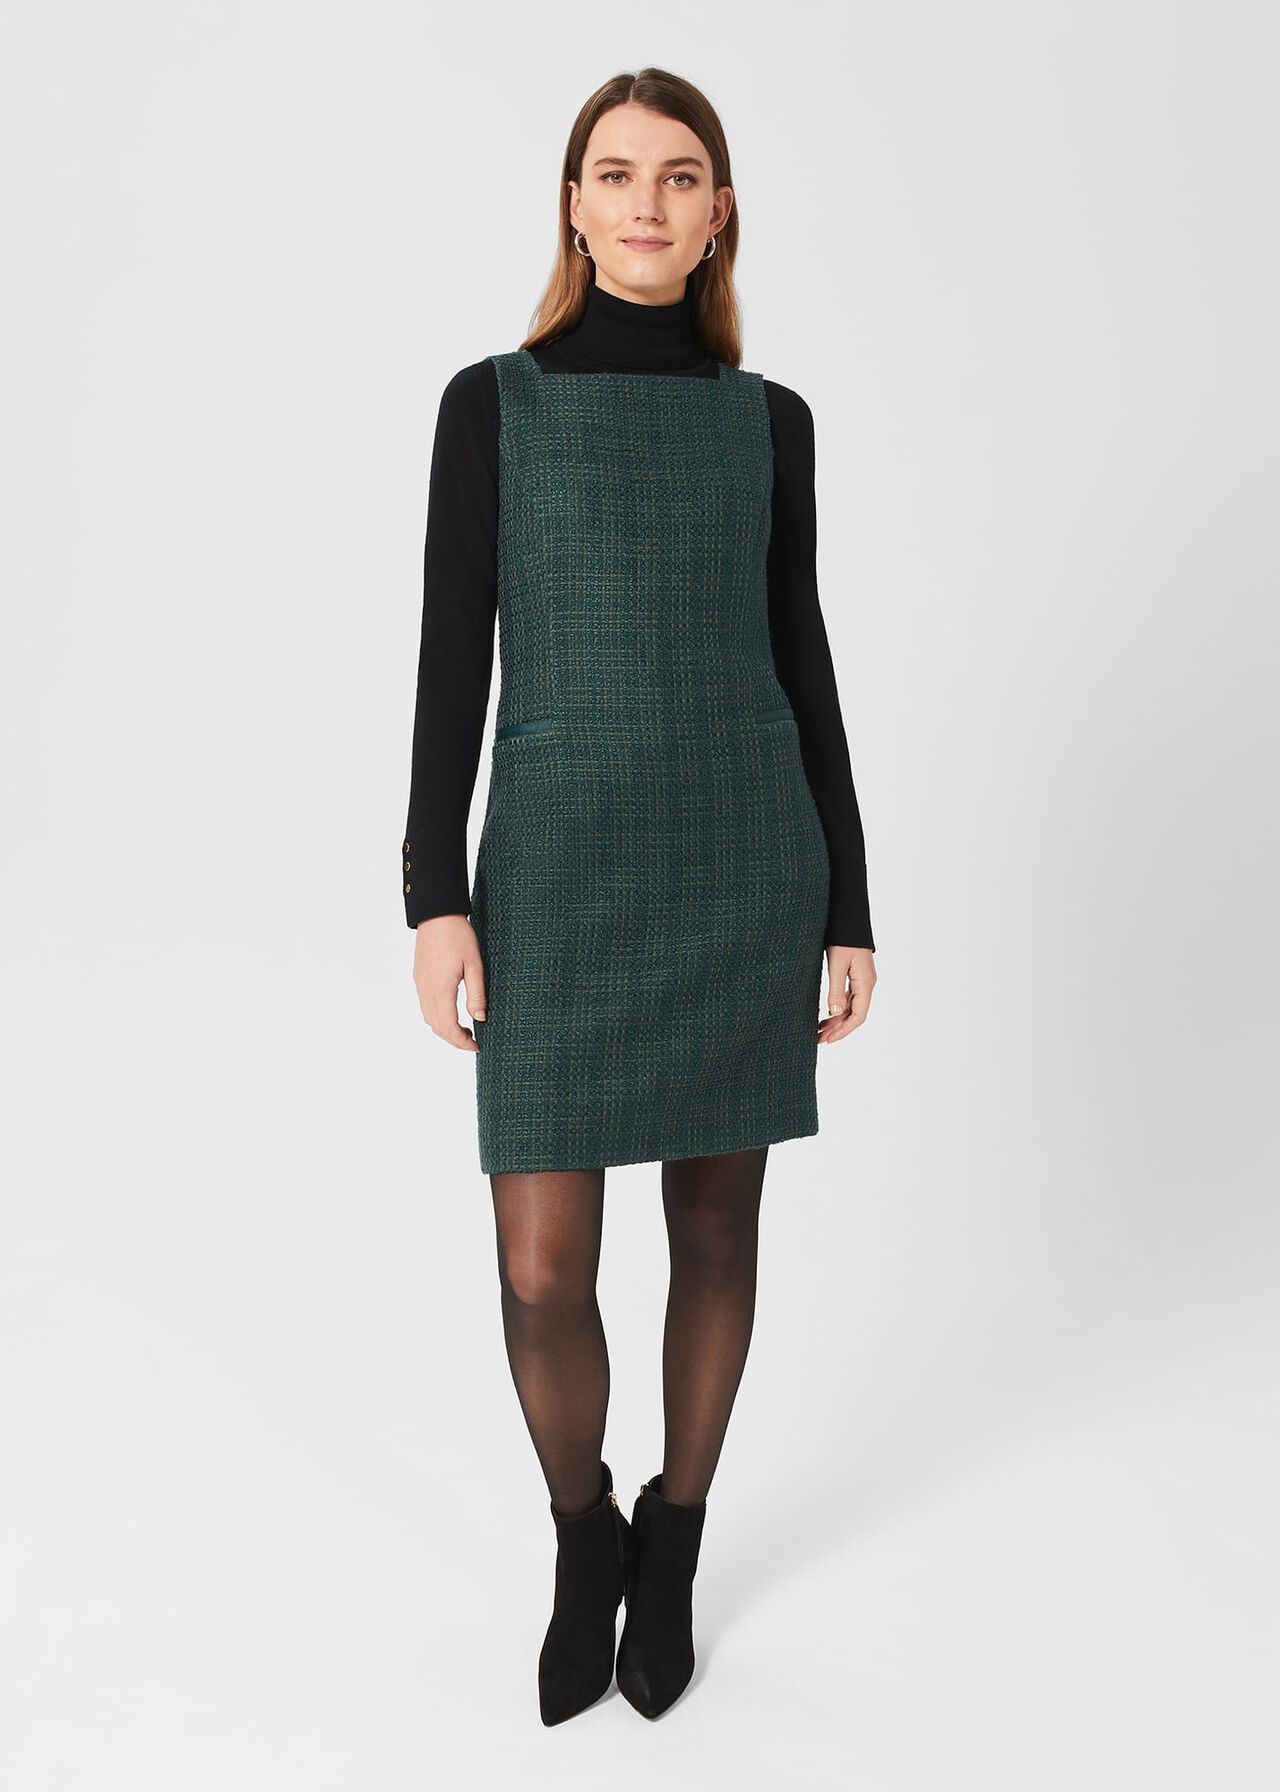 Estella Tweed Dress, Deep Pine Green, hi-res